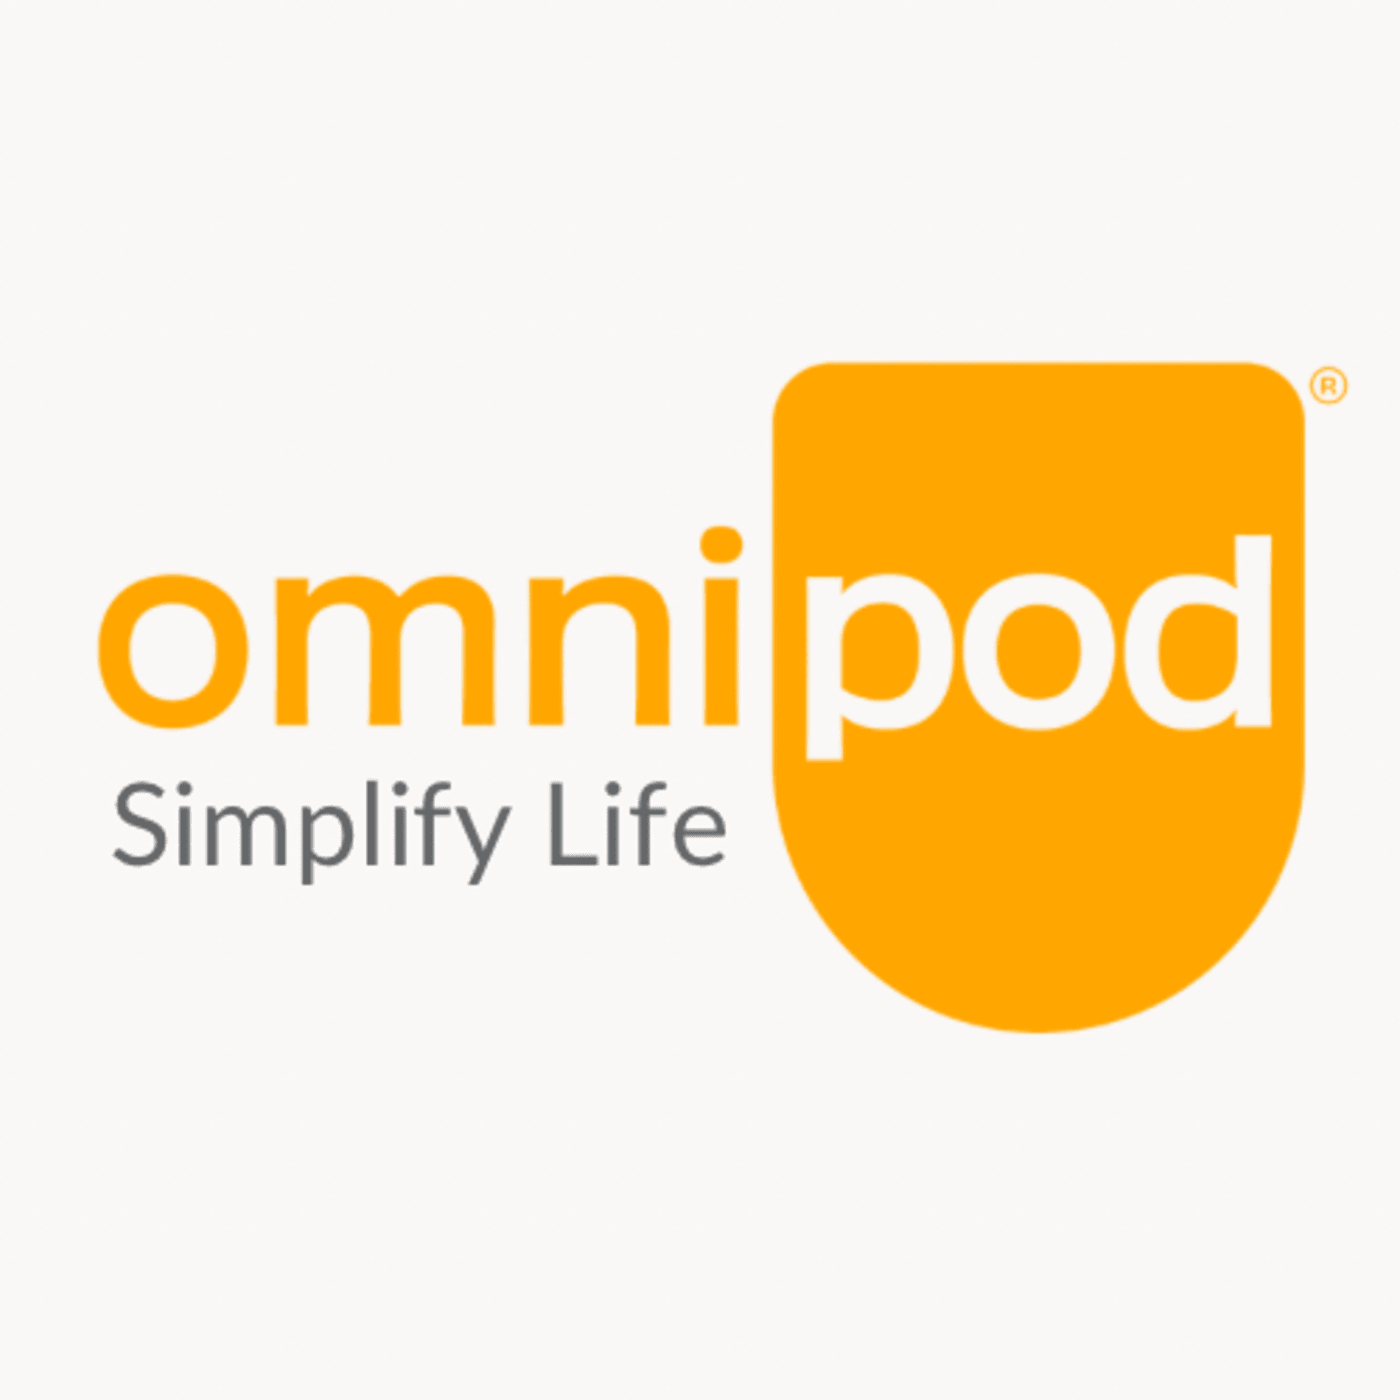 Omnipod Simplify Life